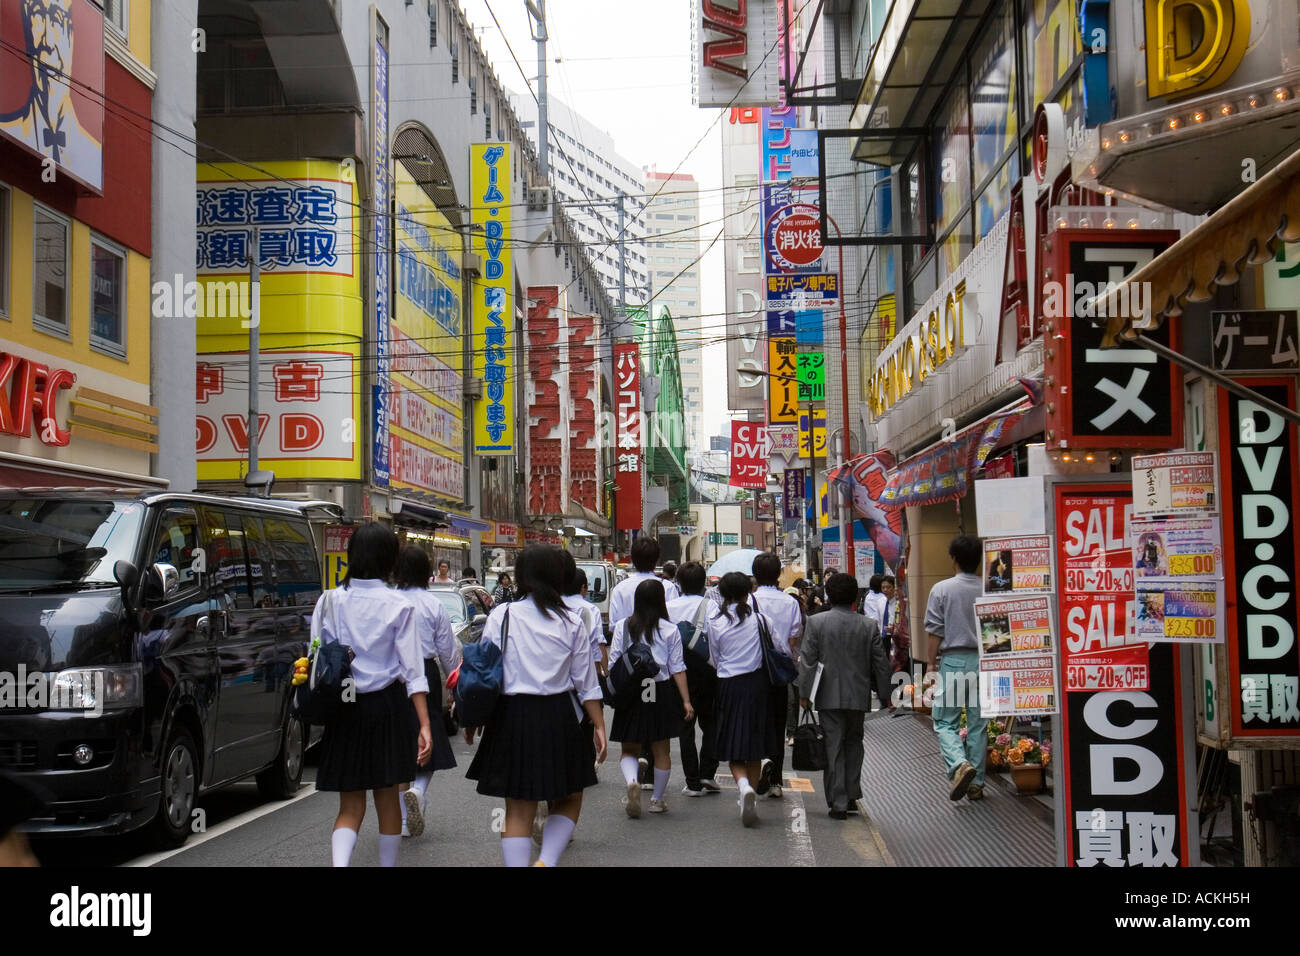 Filles de l'école de porter des uniformes marcher dans une rue animée avec des annonces dans l'électronique d'Akihabara district de Tokyo Japon Banque D'Images